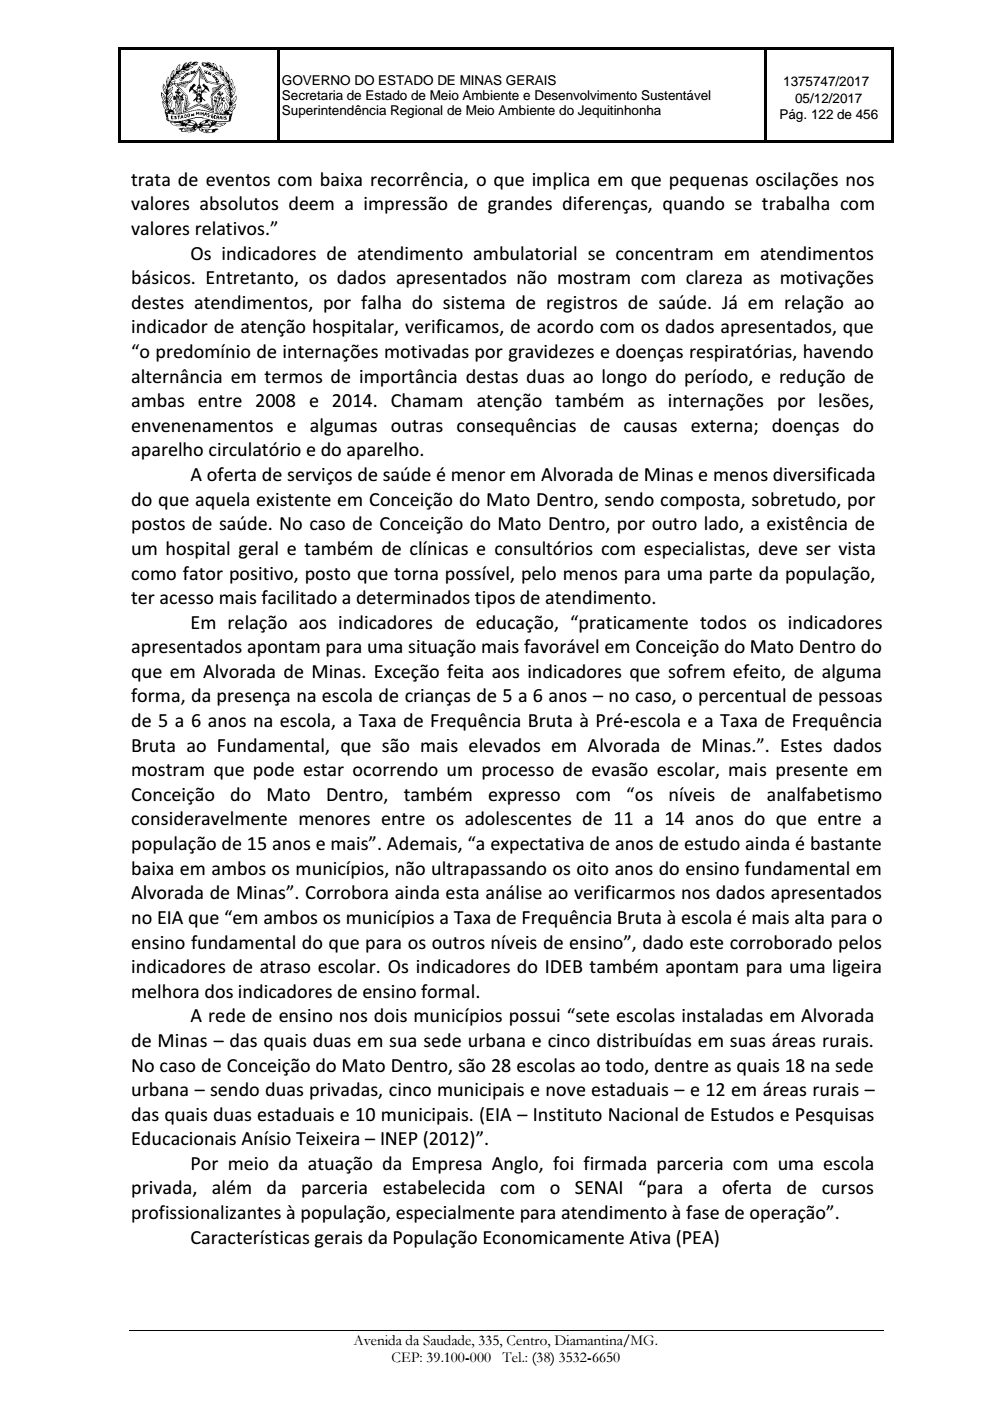 Page 122 from Parecer único da Secretaria de estado de Meio Ambiente e Desenvolvimento Sustentável (SEMAD)